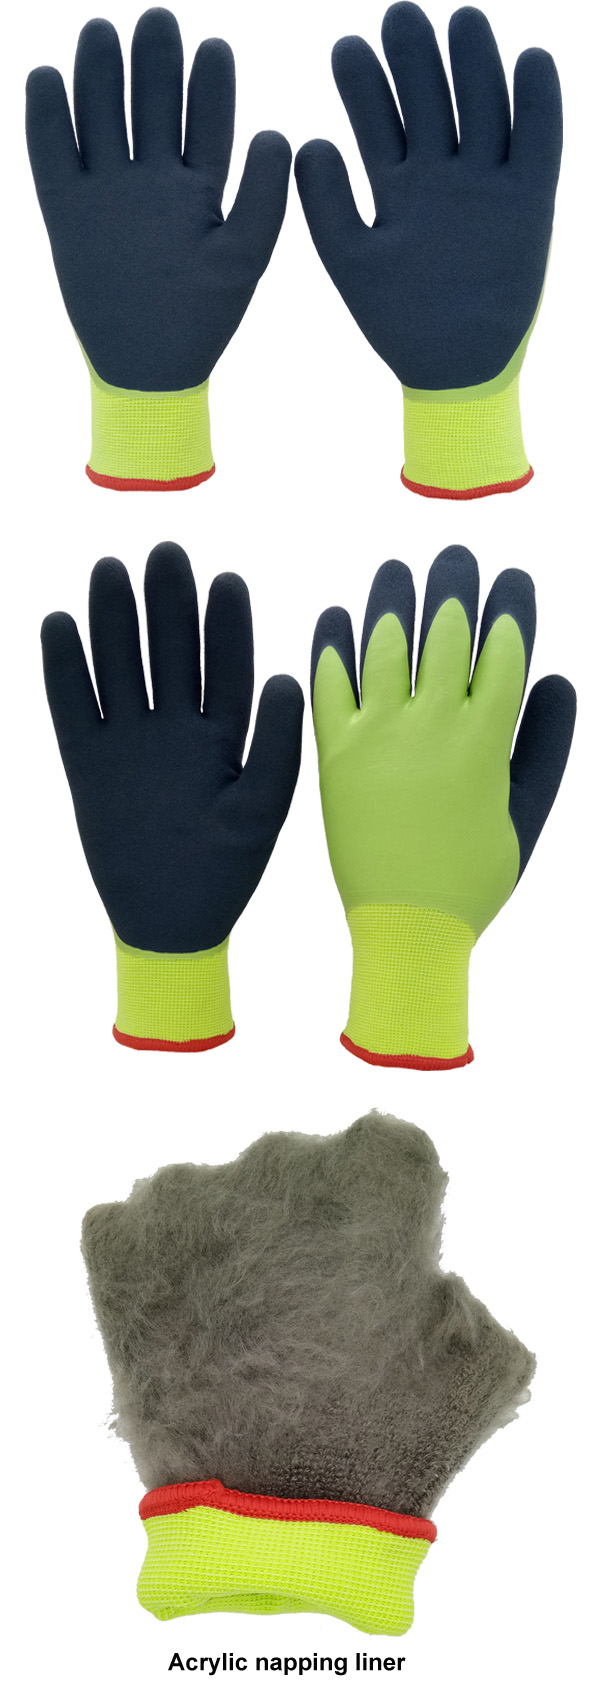 industrial latex coated gloves -4.jpg